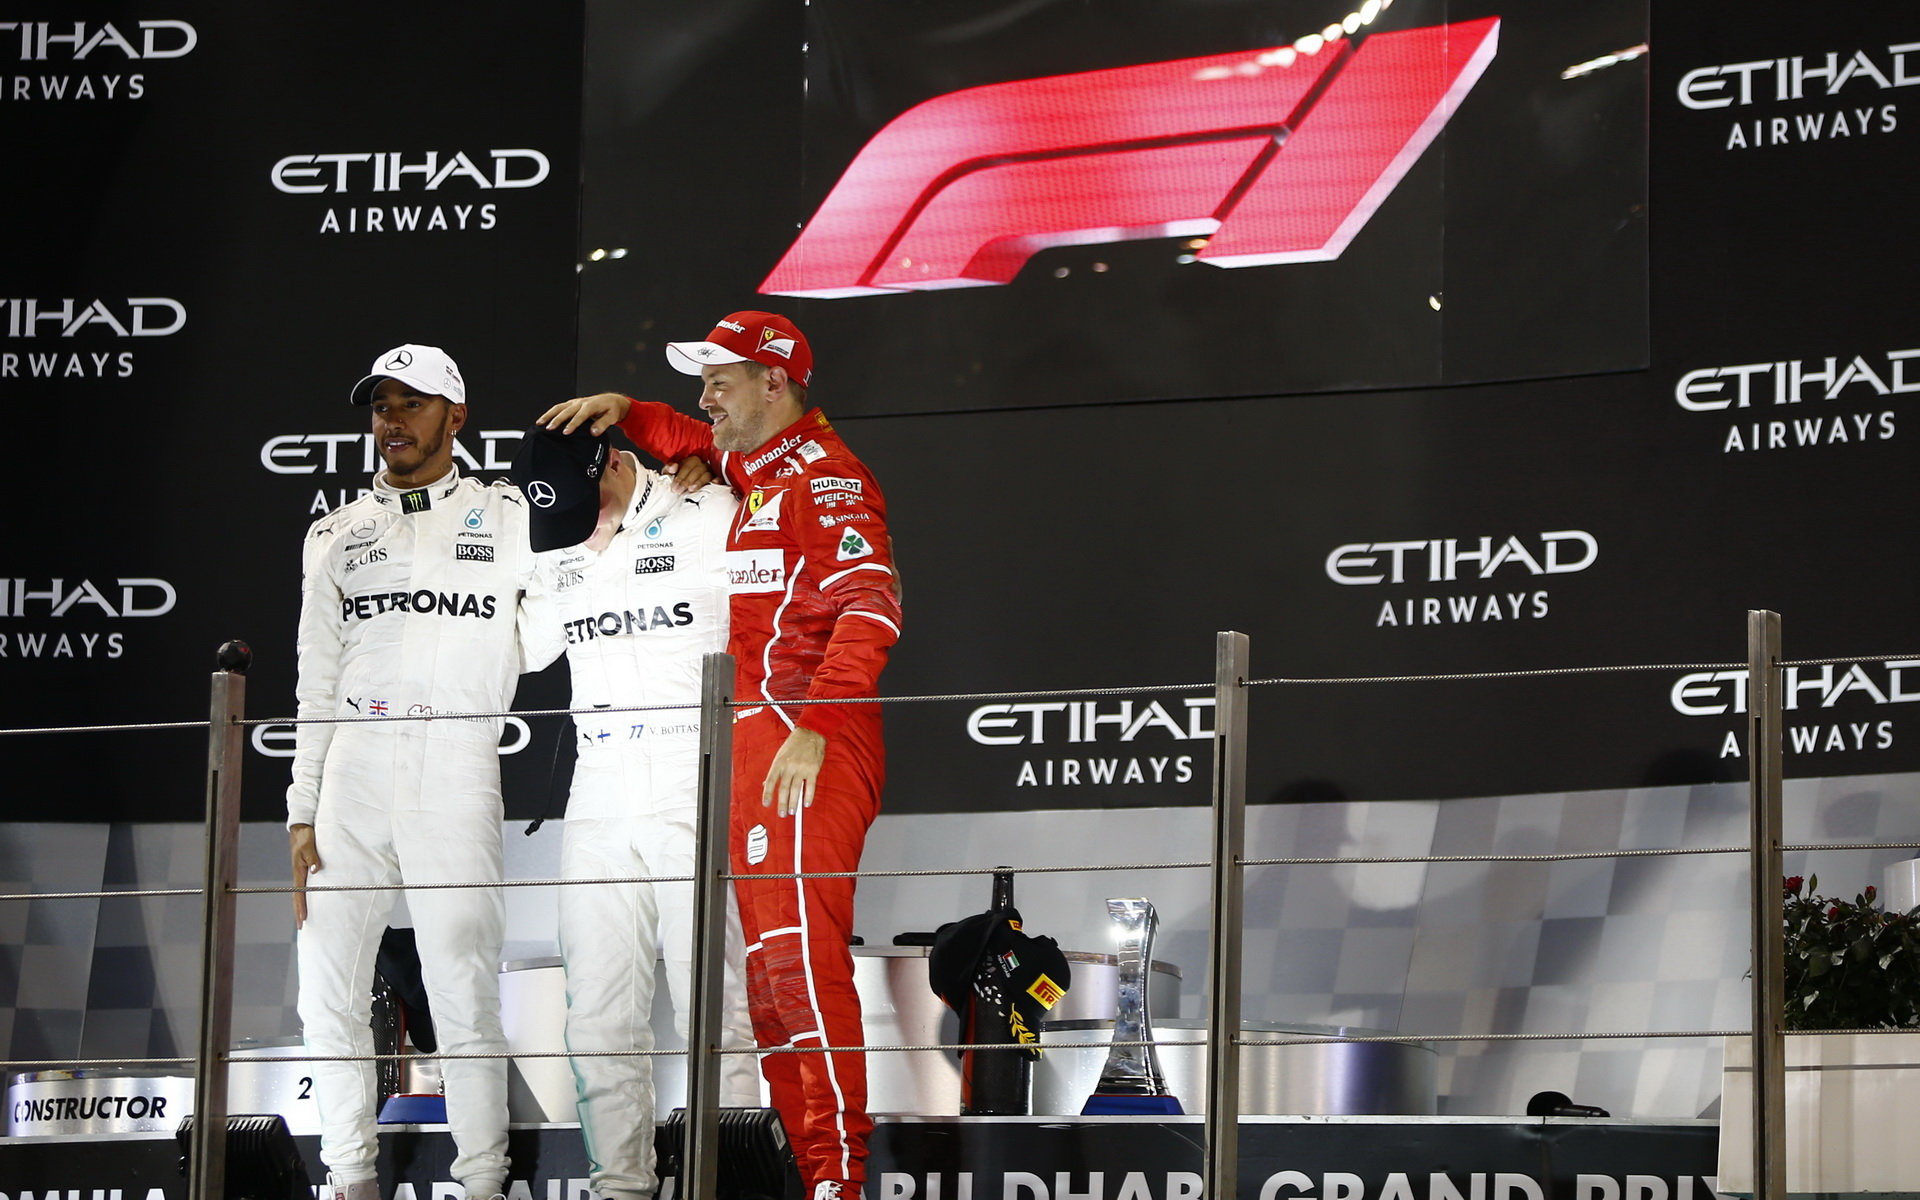 Tři nejlepší jezdci na pódiu a nové logo F1 po závodě v Abú Zabí